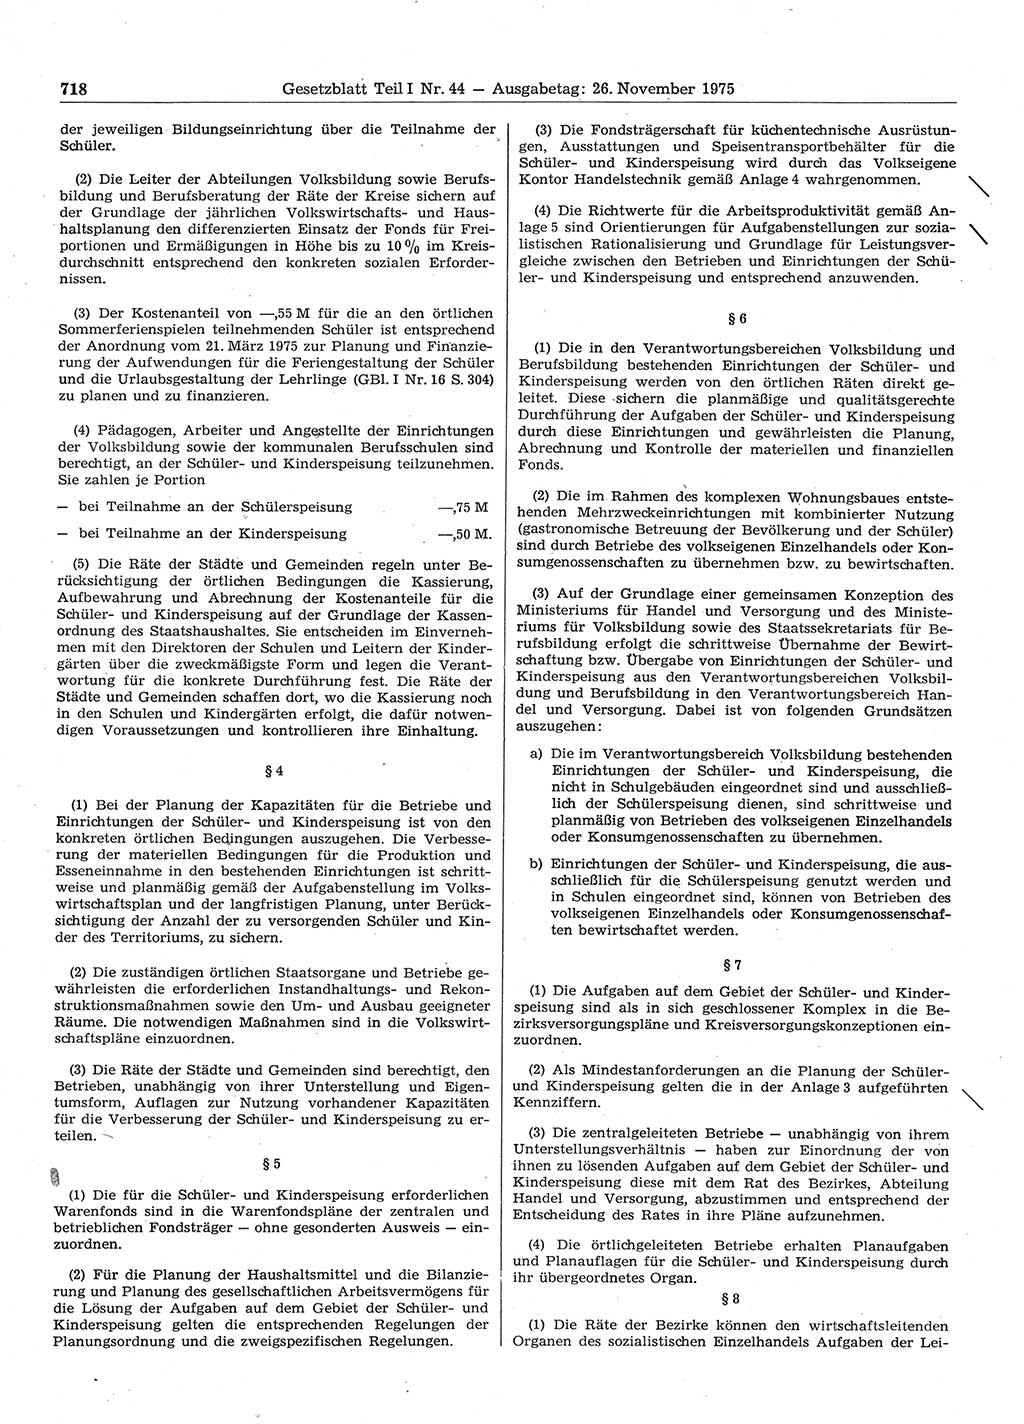 Gesetzblatt (GBl.) der Deutschen Demokratischen Republik (DDR) Teil Ⅰ 1975, Seite 718 (GBl. DDR Ⅰ 1975, S. 718)